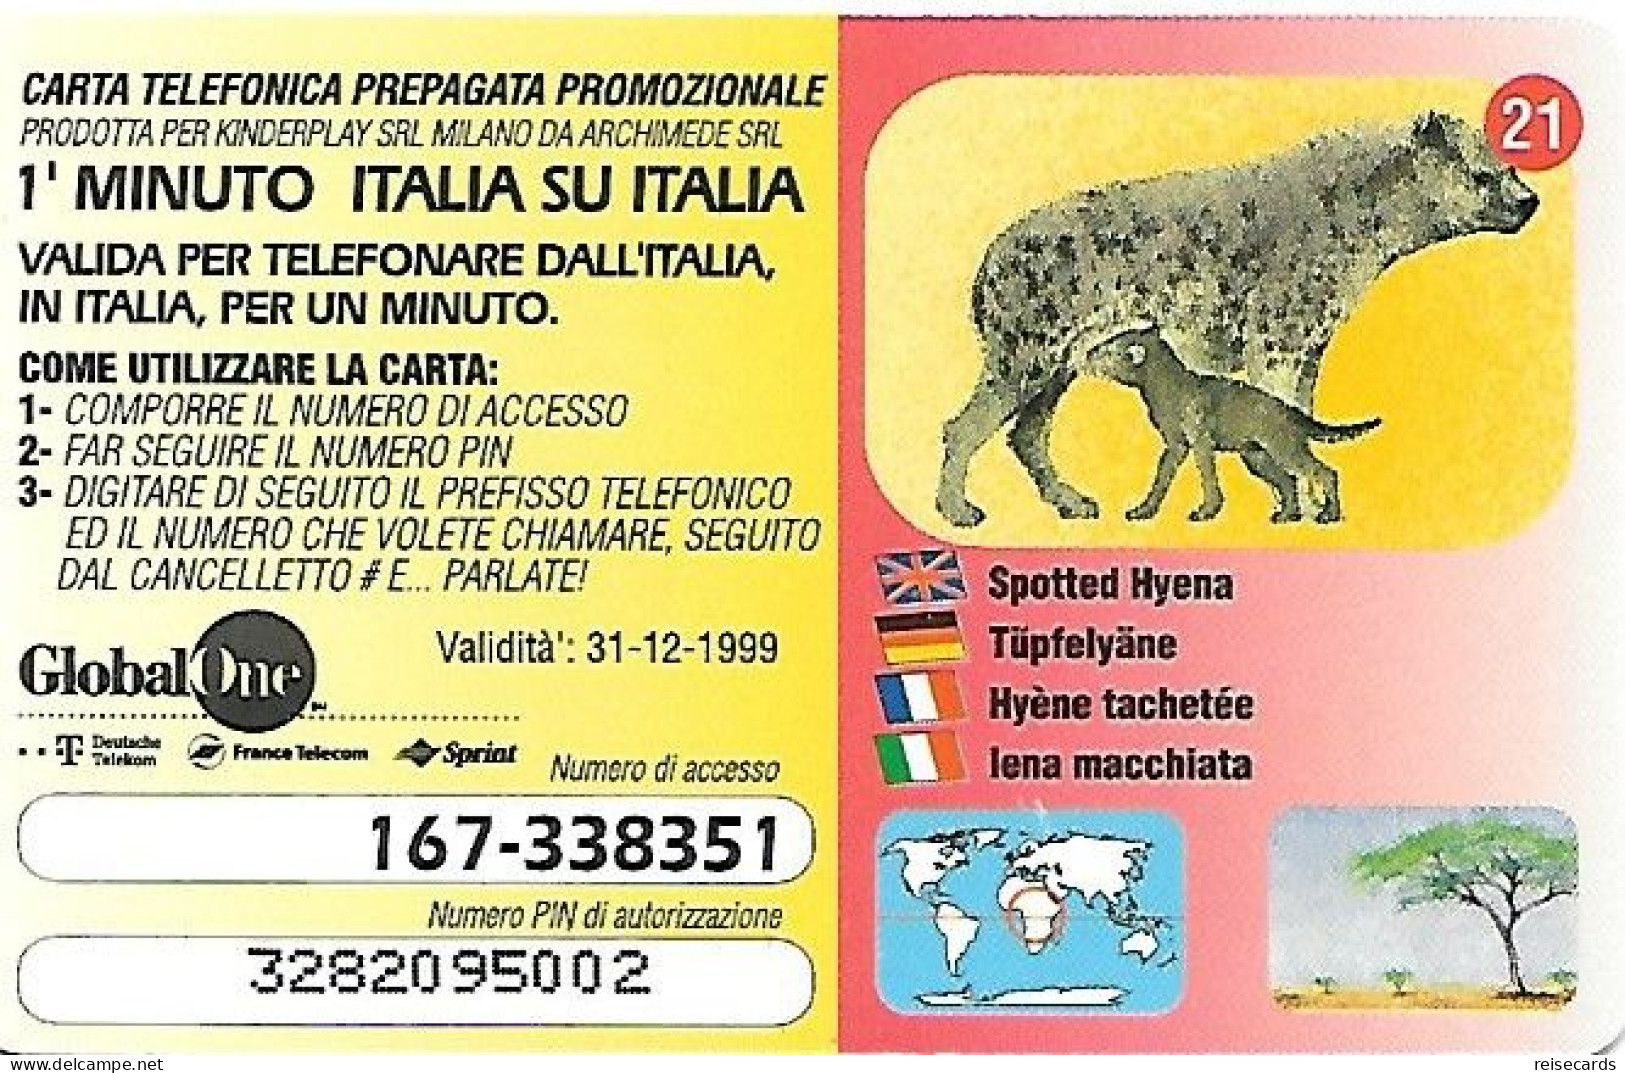 Italy: Prepaid GlobalOne - Save The Planet 21, Tüpfelhyäne - Cartes GSM Prépayées & Recharges